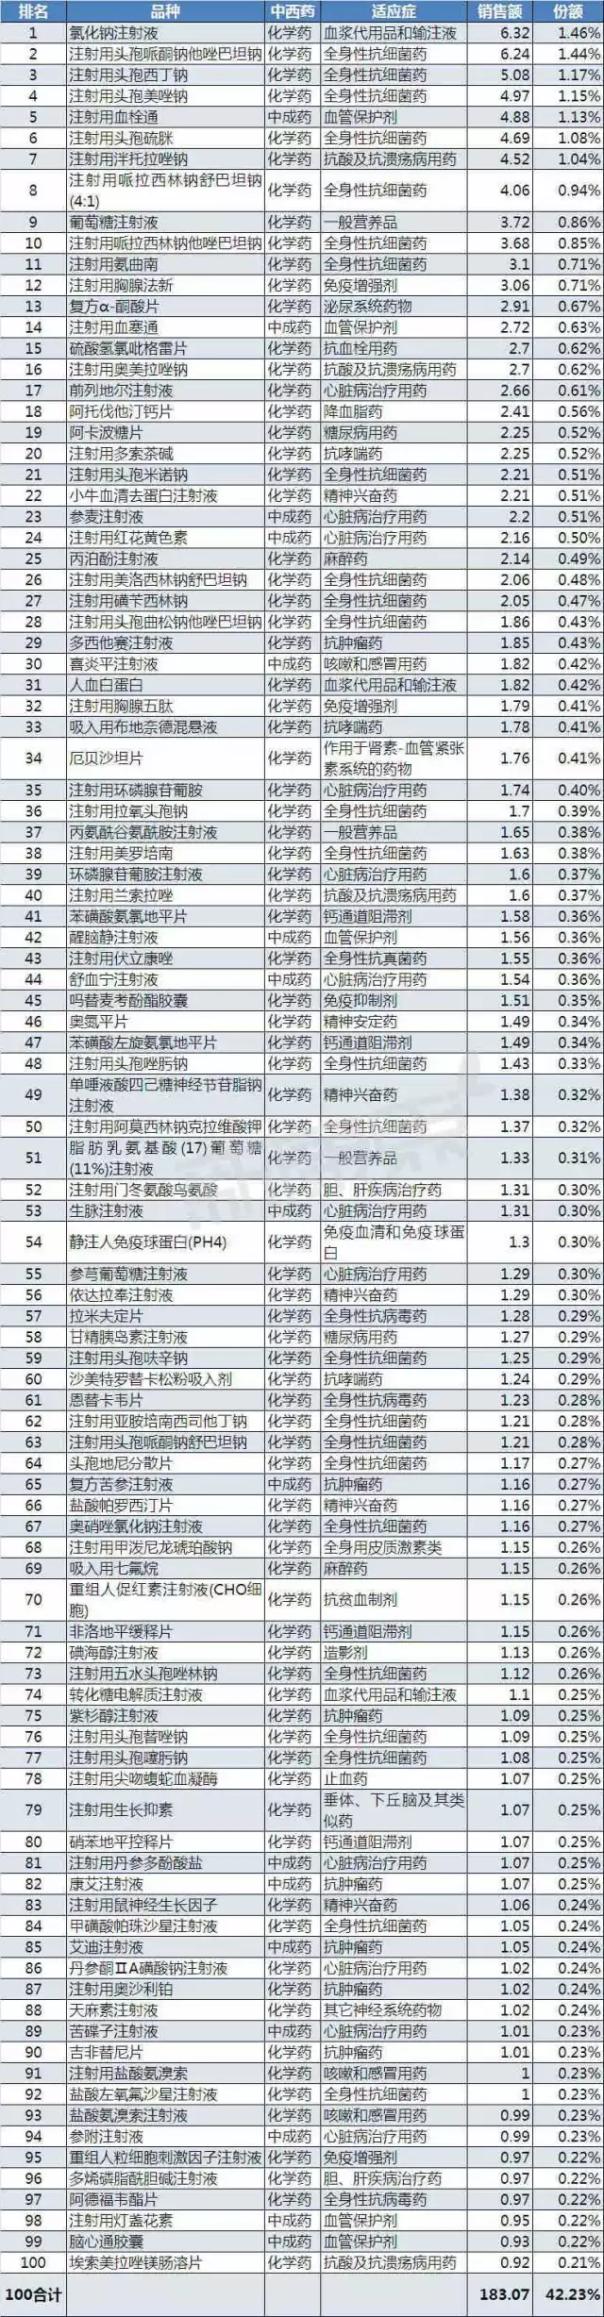 2016年四川省等级医院TOP100品种排行榜